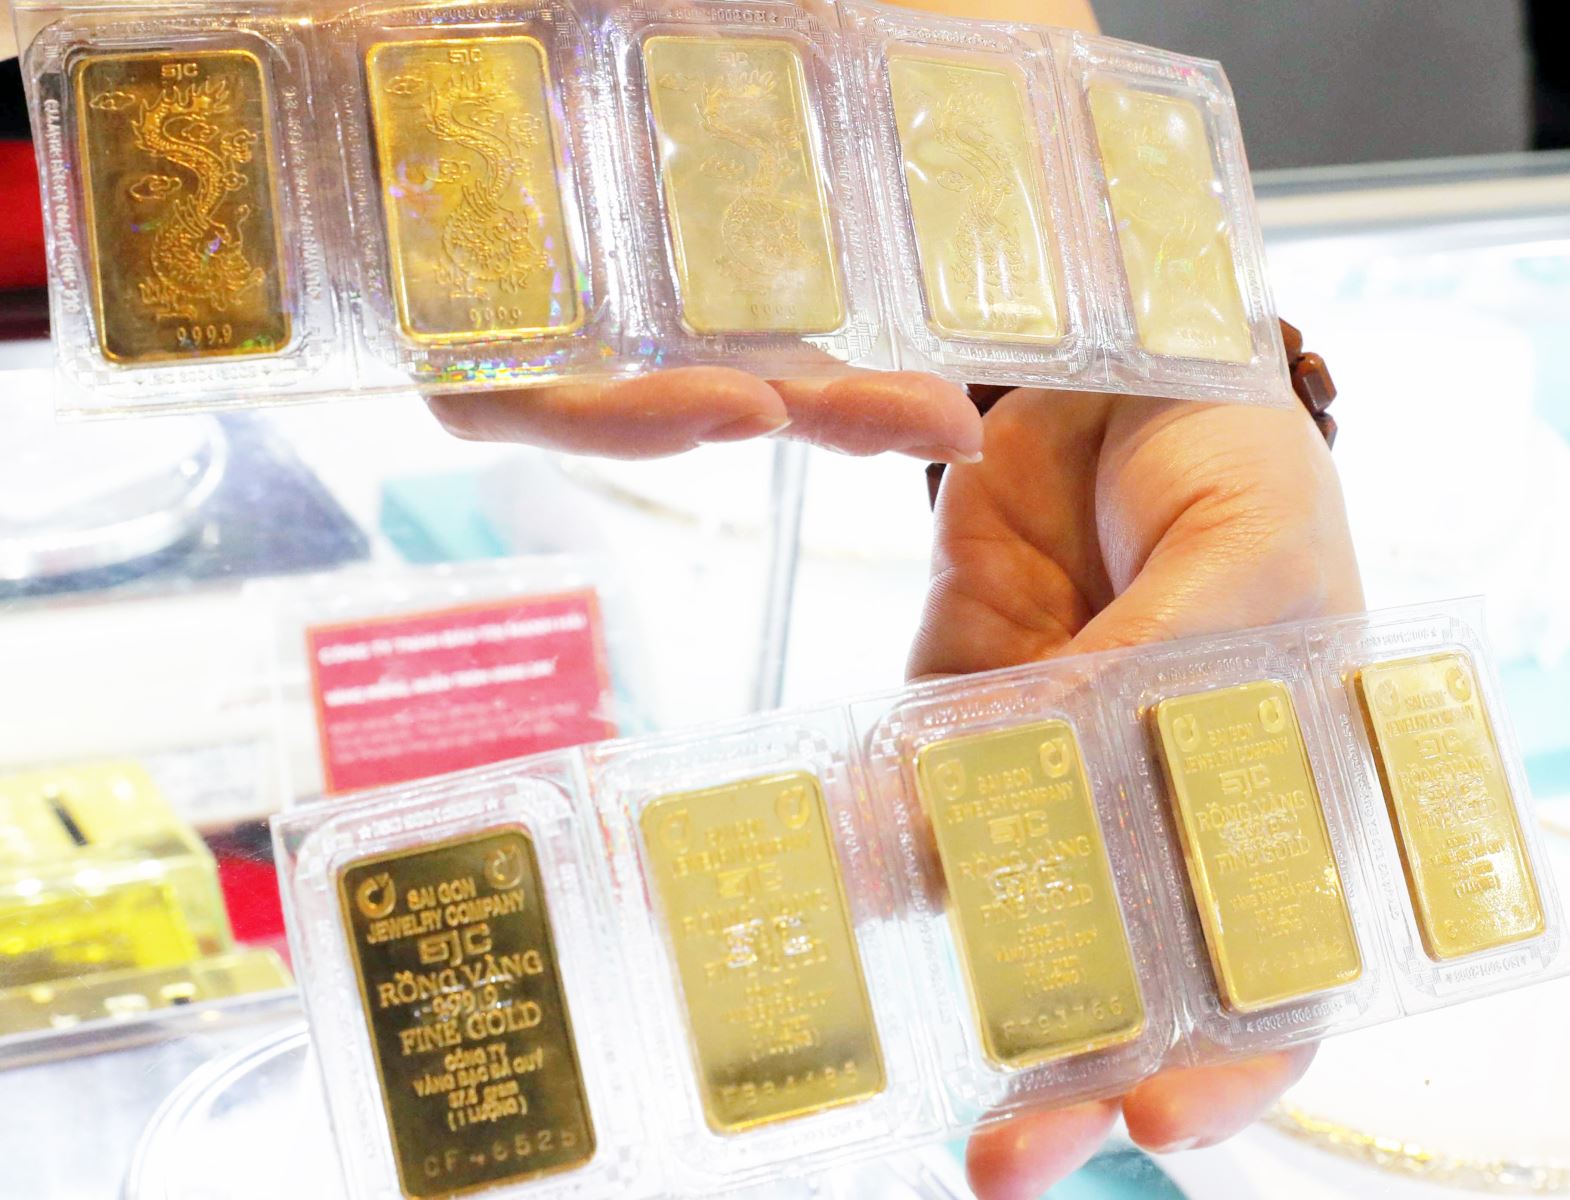 Giá vàng SJC tại thị trường Hà Nội được niêm yết ở mức 66,6 – 67,22 triệu đồng/lượng. Ảnh minh họa